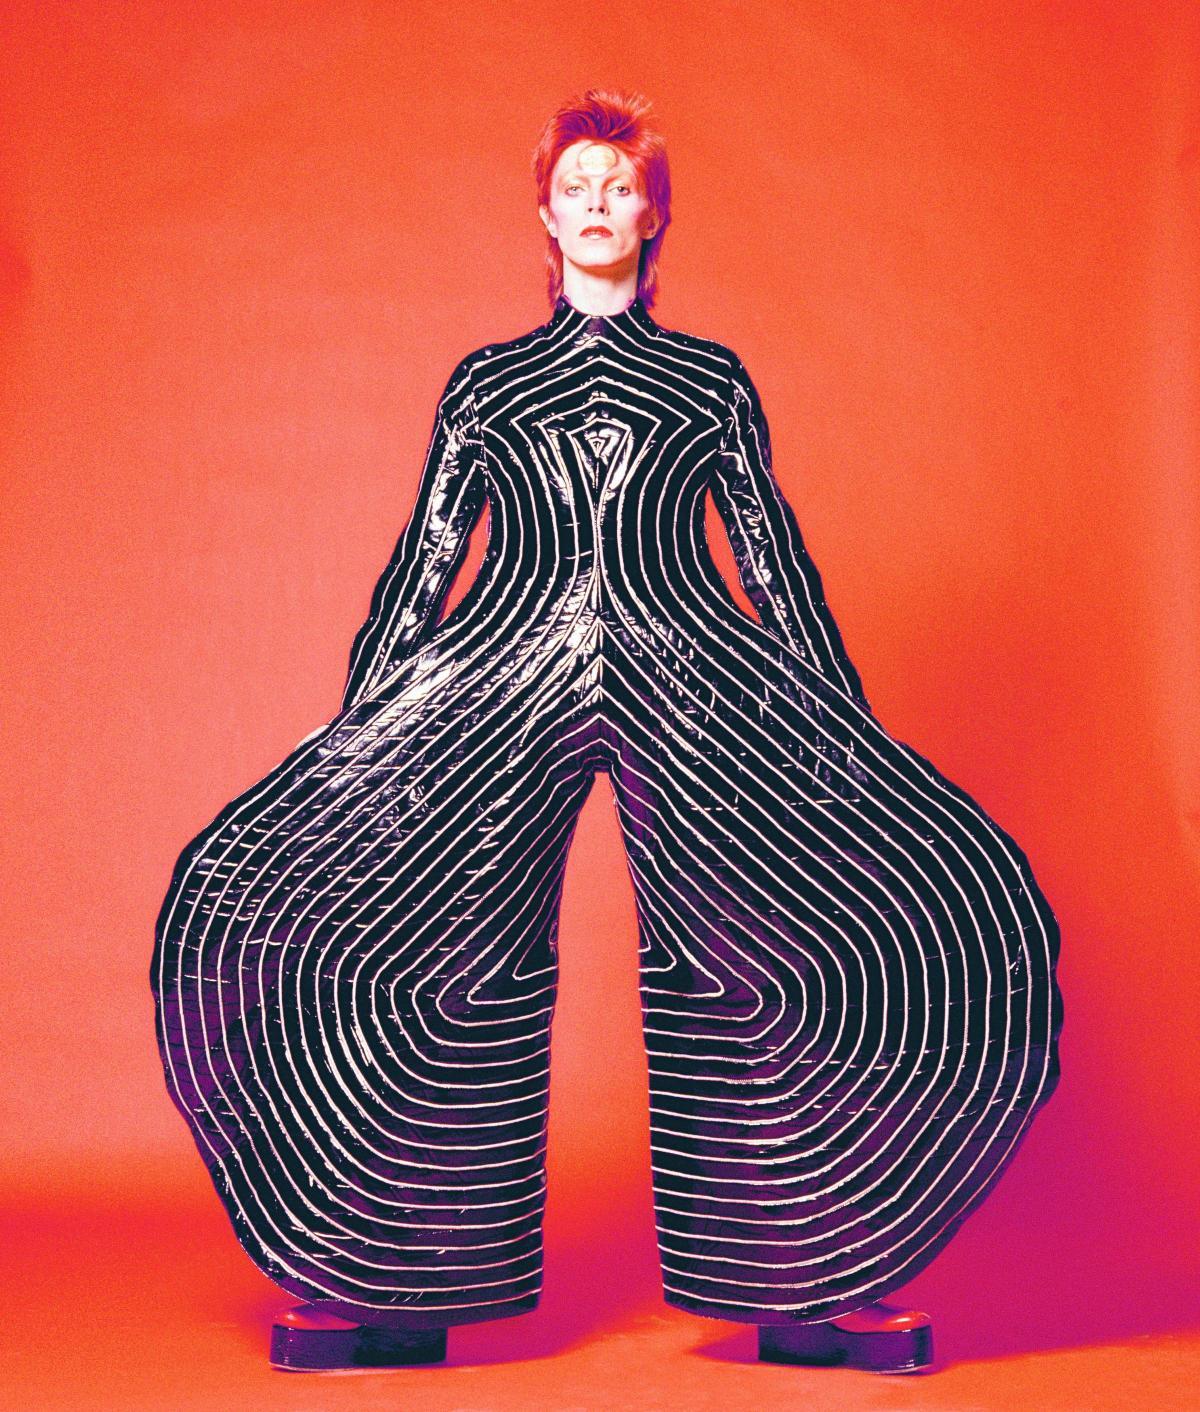 Bekende gasten op mijn droomdiner: David Bowie